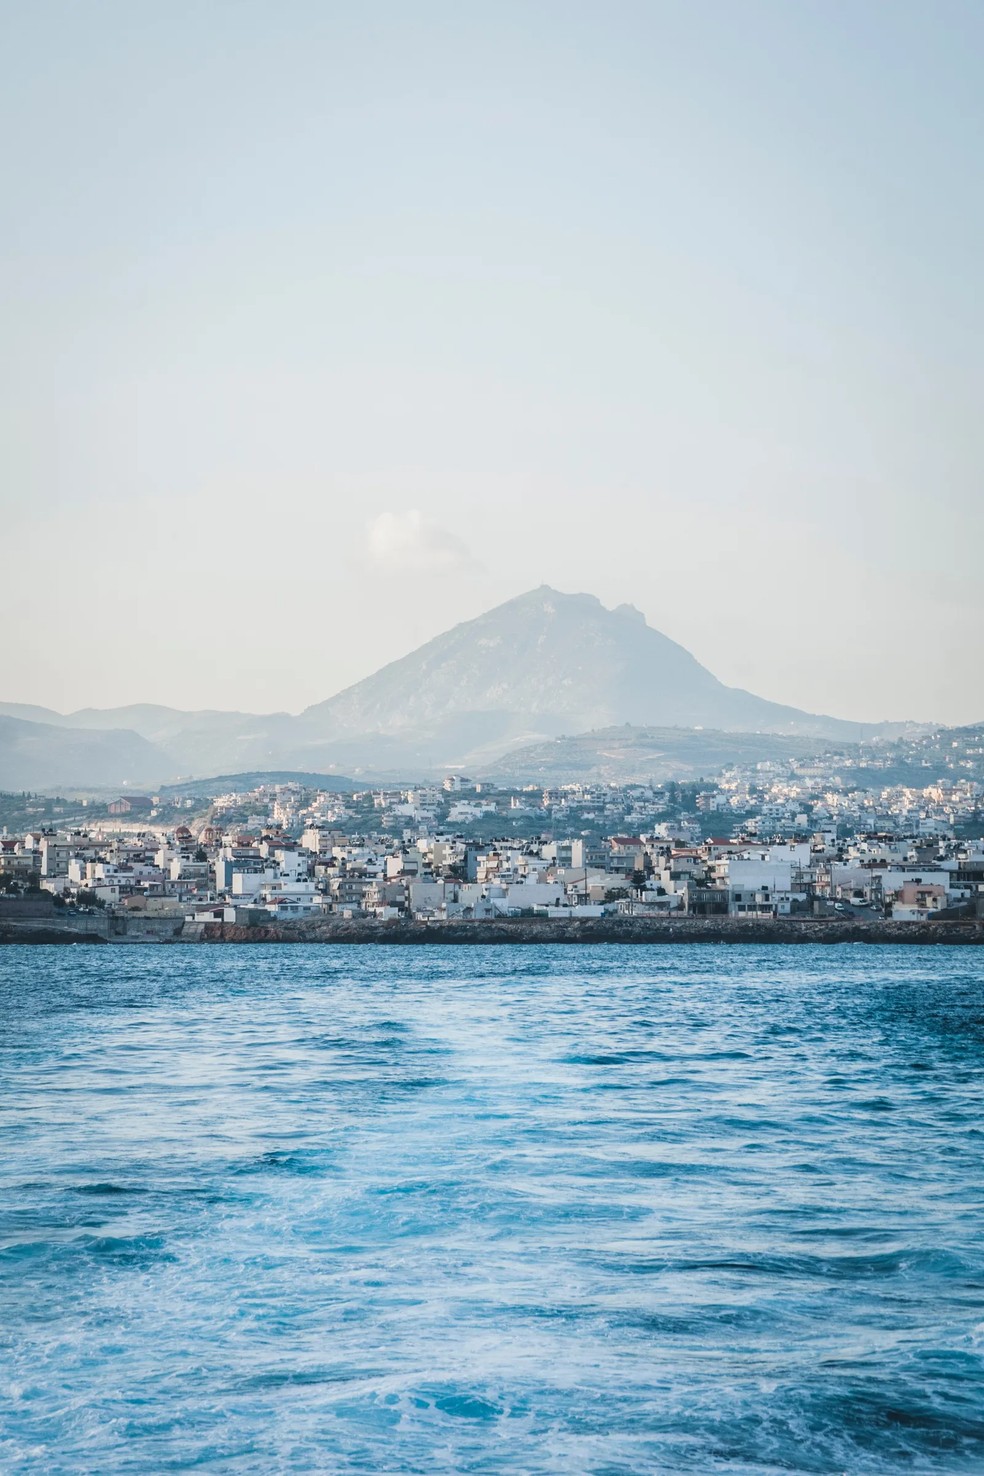 Iráklio é a capital de Creta, localizada no centro geográfico da ilha — Foto: Divulgação